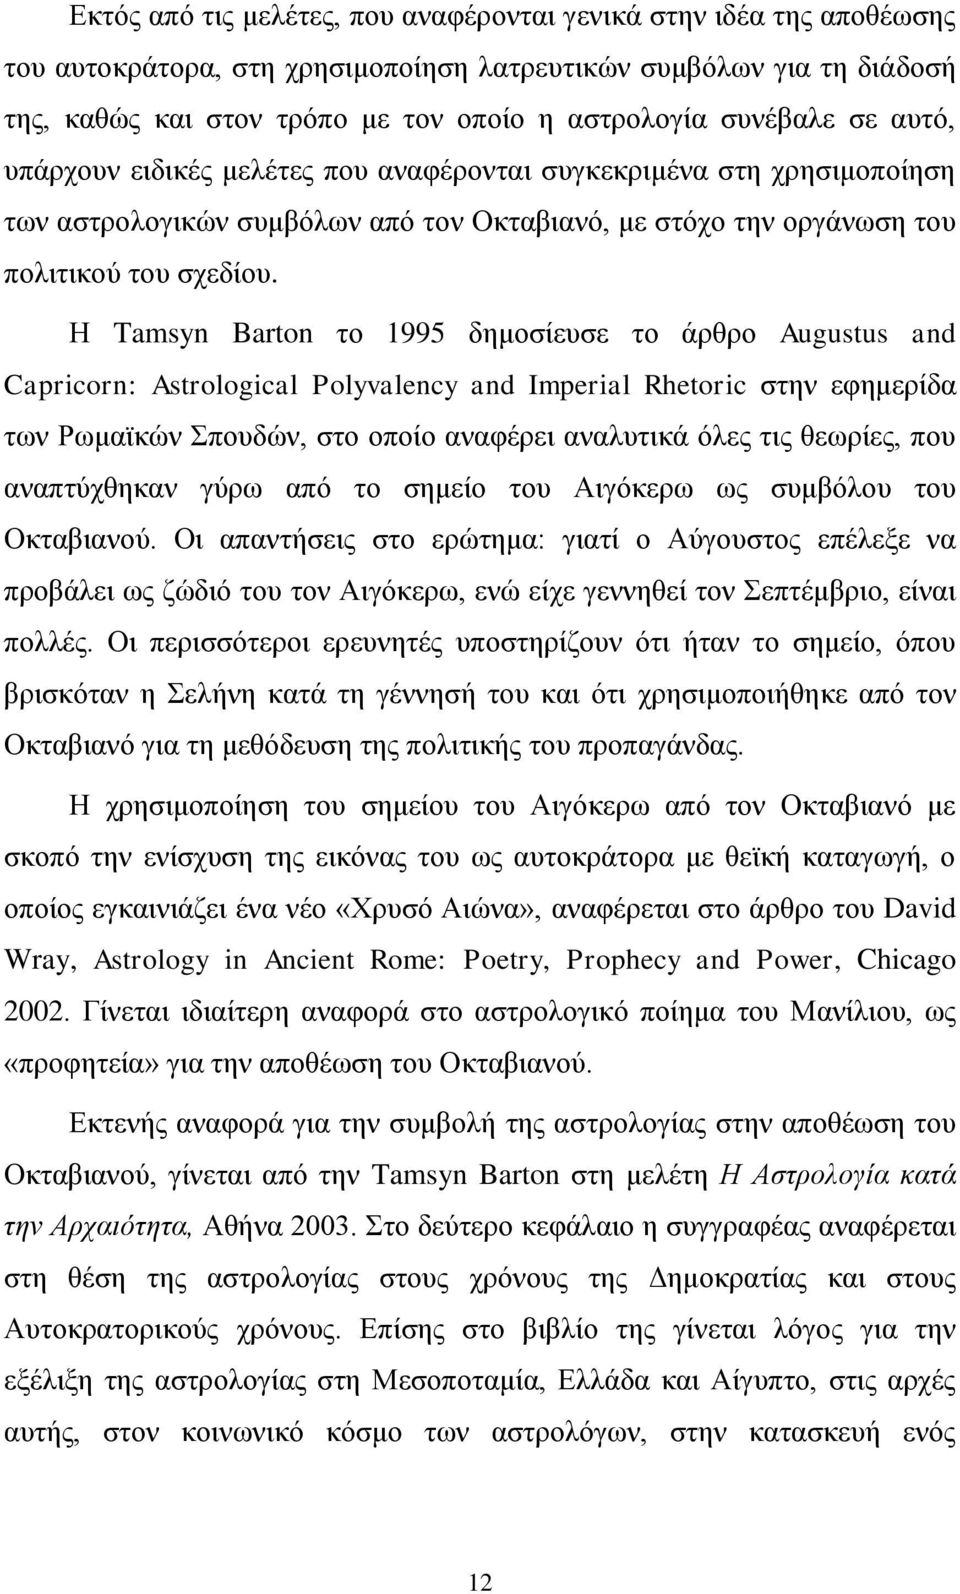 Η Tamsyn Barton το 1995 δημοσίευσε το άρθρο Augustus and Capricorn: Astrological Polyvalency and Imperial Rhetoric στην εφημερίδα των Ρωμαϊκών Σπουδών, στο οποίο αναφέρει αναλυτικά όλες τις θεωρίες,